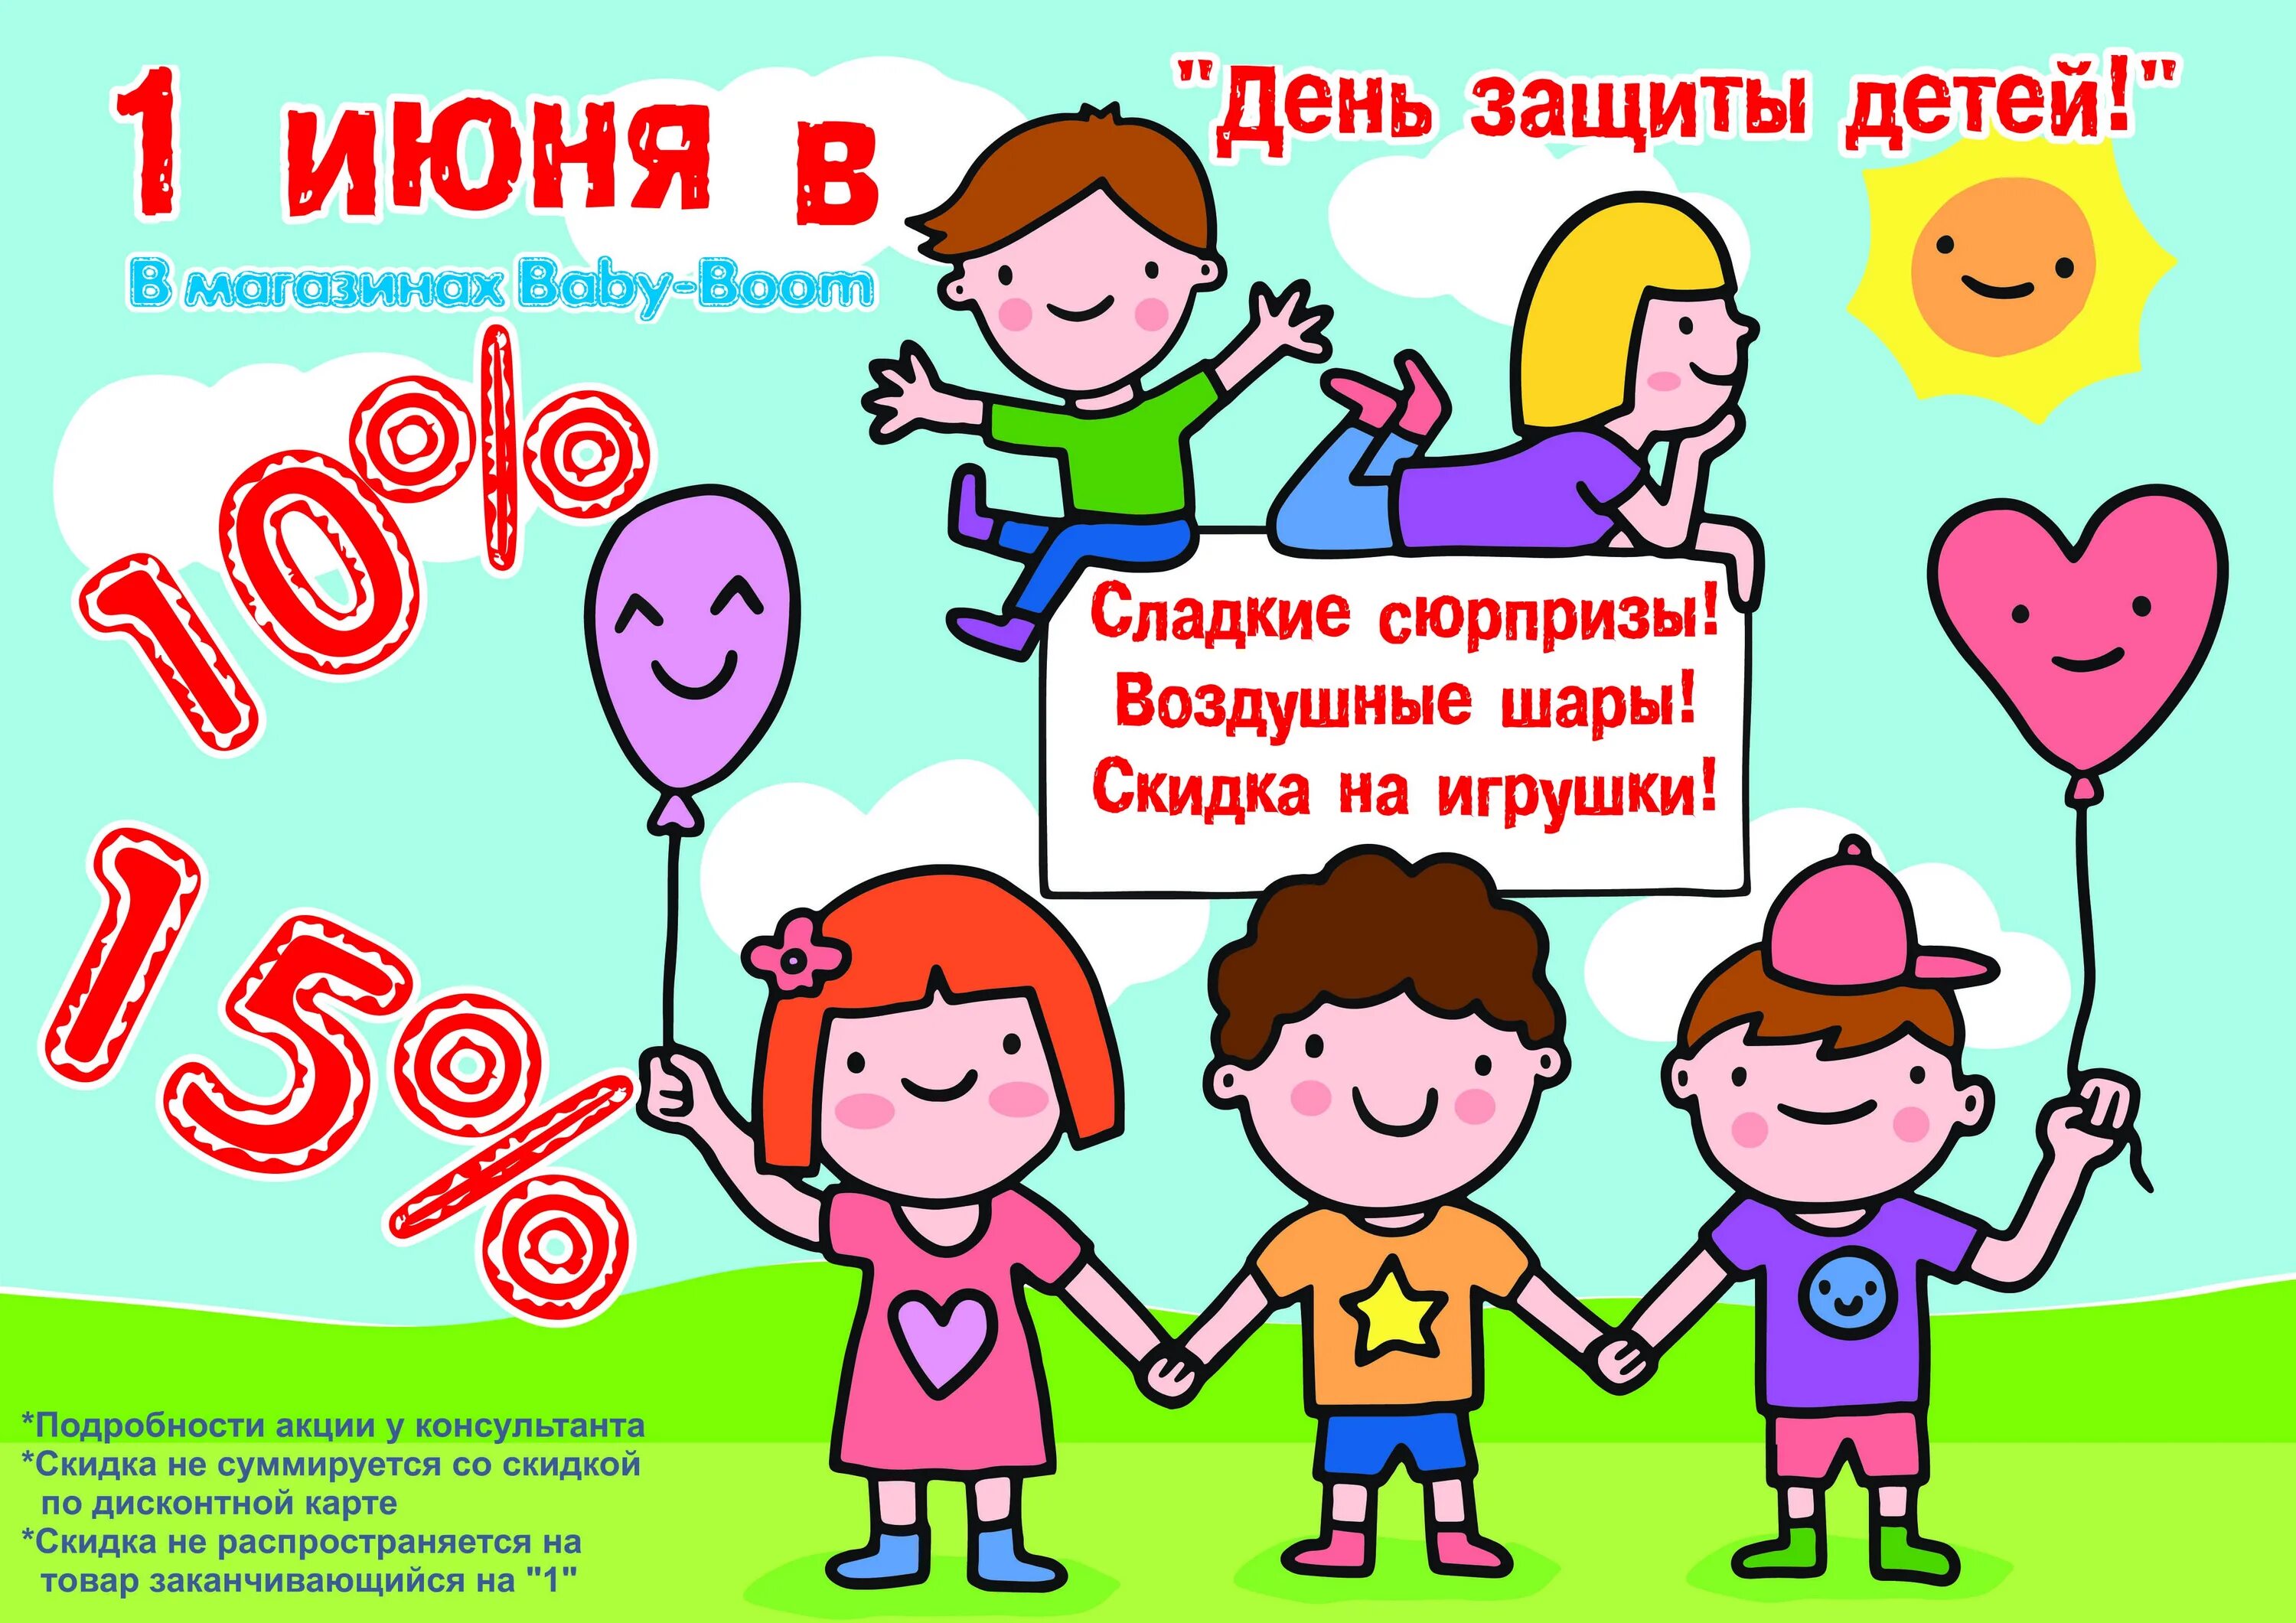 Цели 1 июня. День защиты детей скидки. Акция ко Дню защиты детей. 1 Июня день защиты детей. Акции ко Дню защиты детей в магазинах.